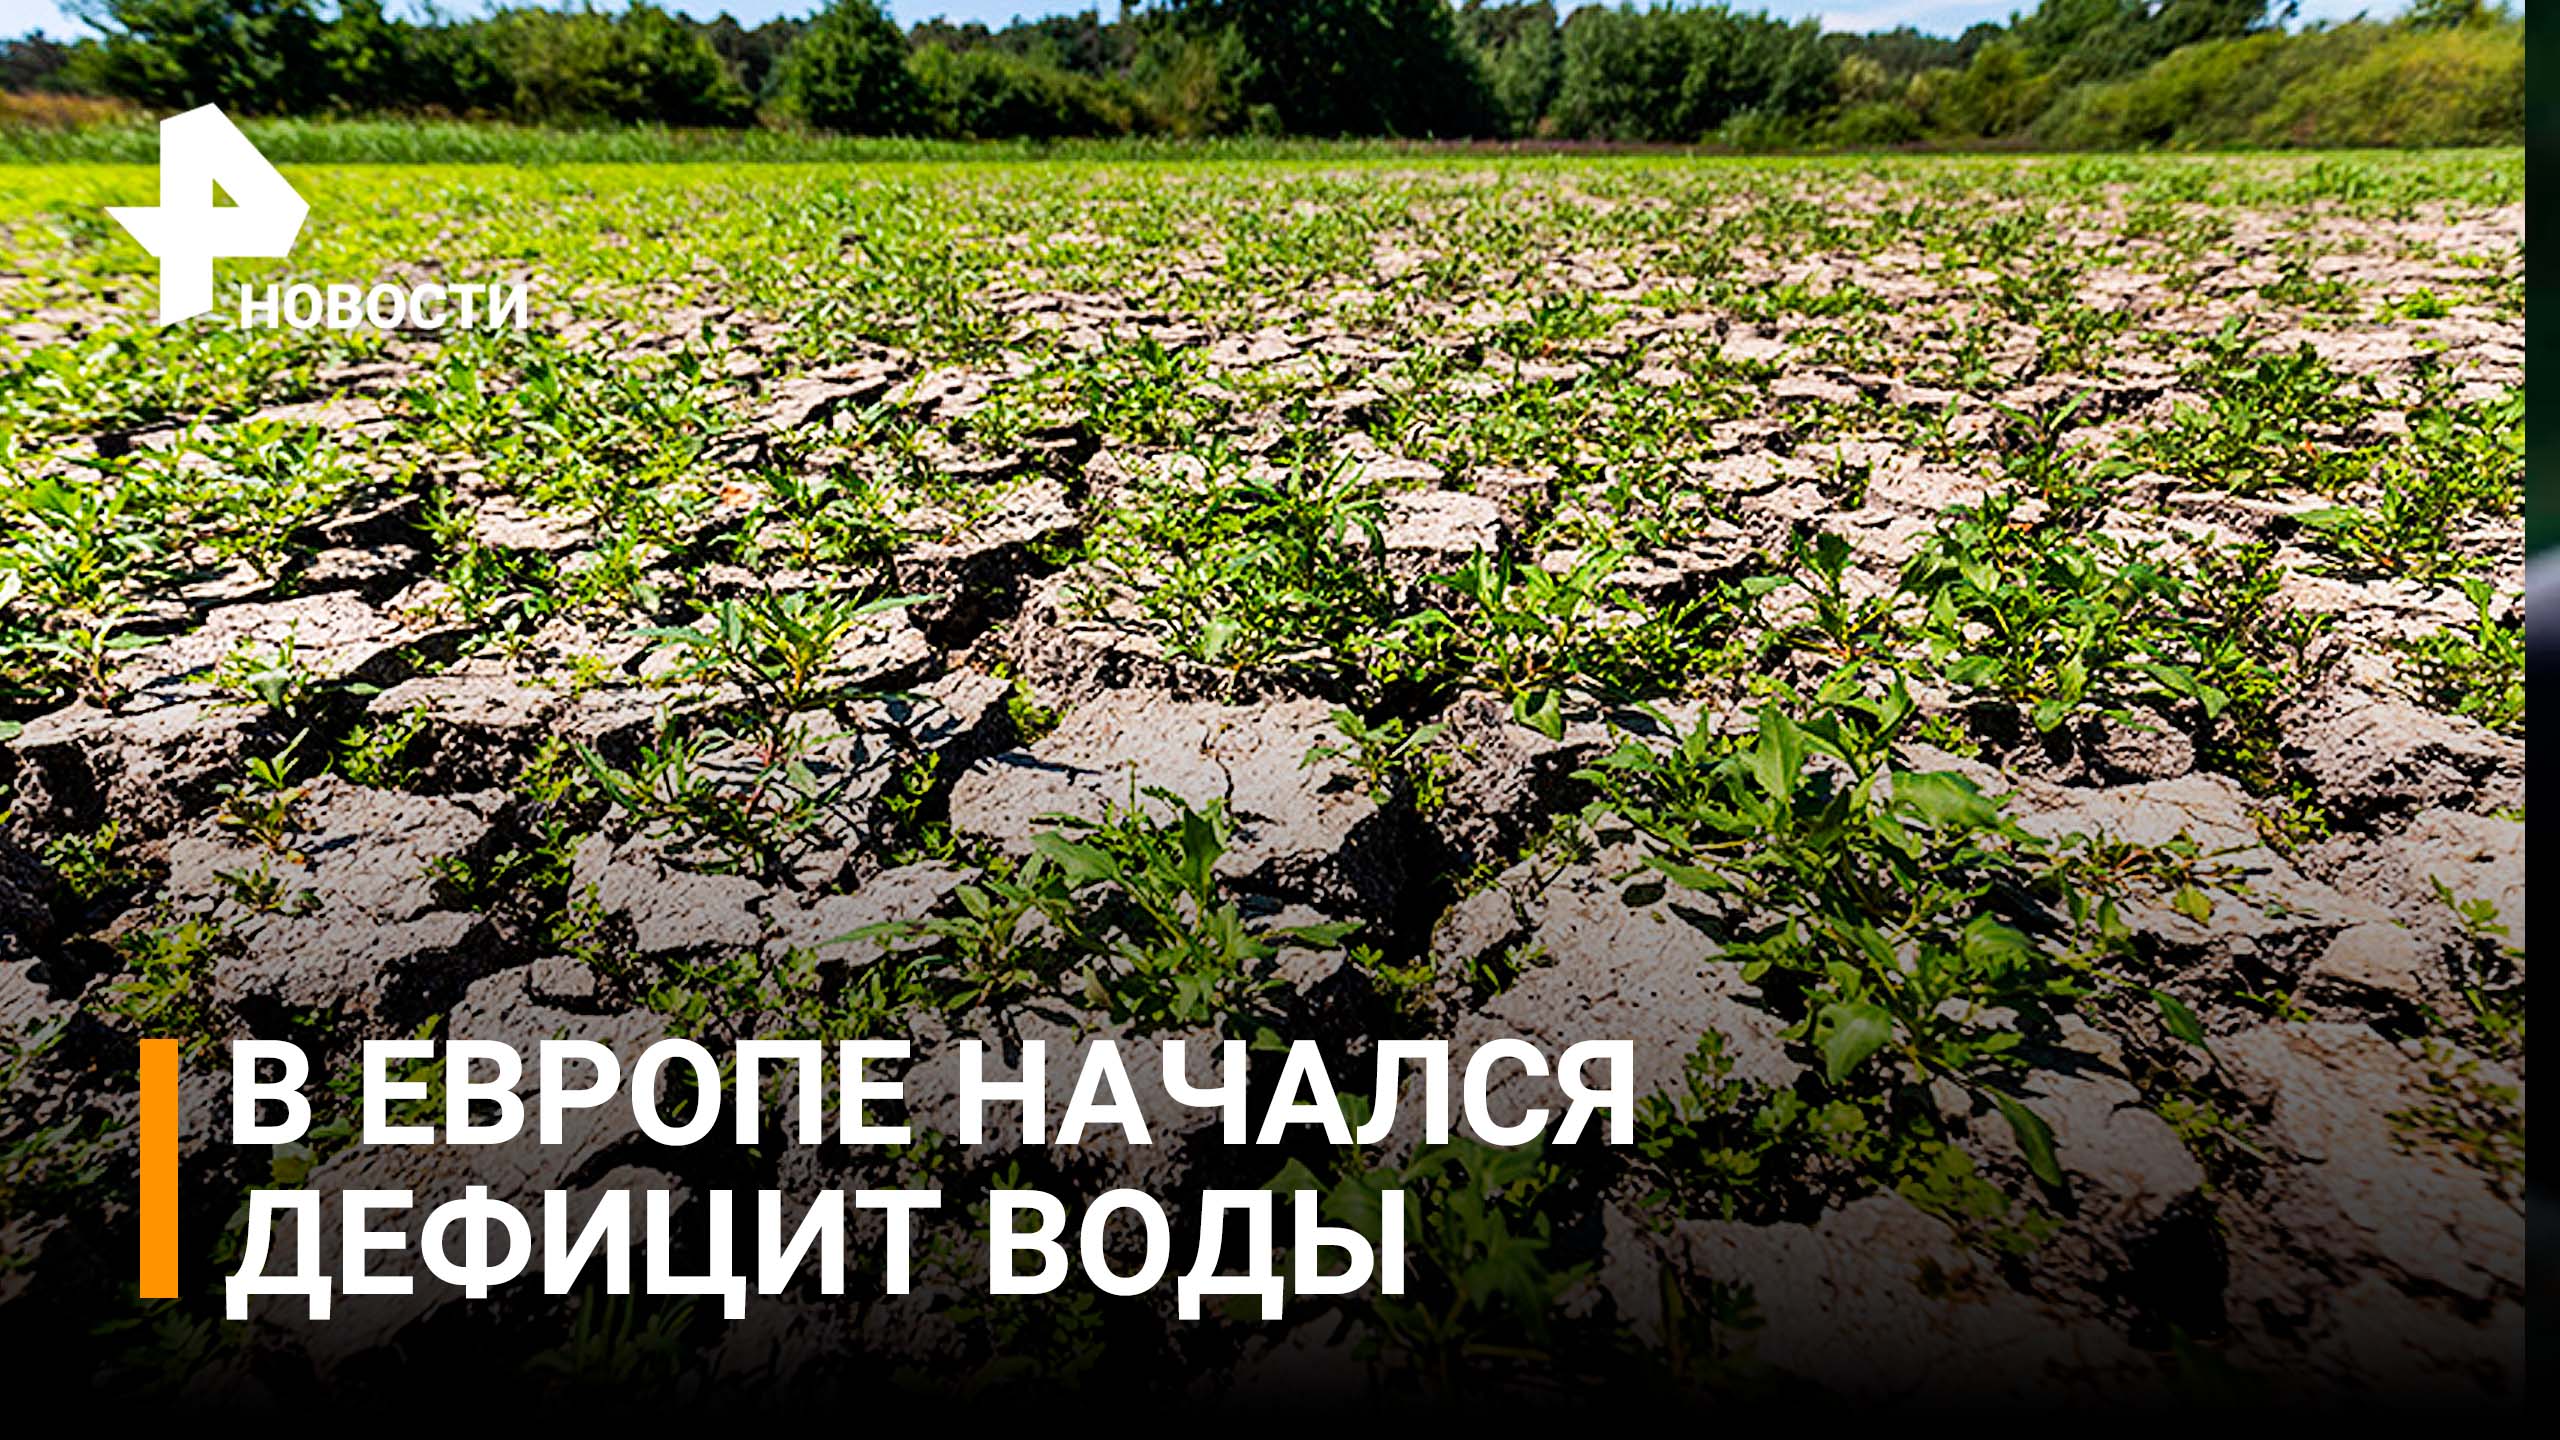 Аномальная жара привела к дефициту воды в Европе / РЕН Новости